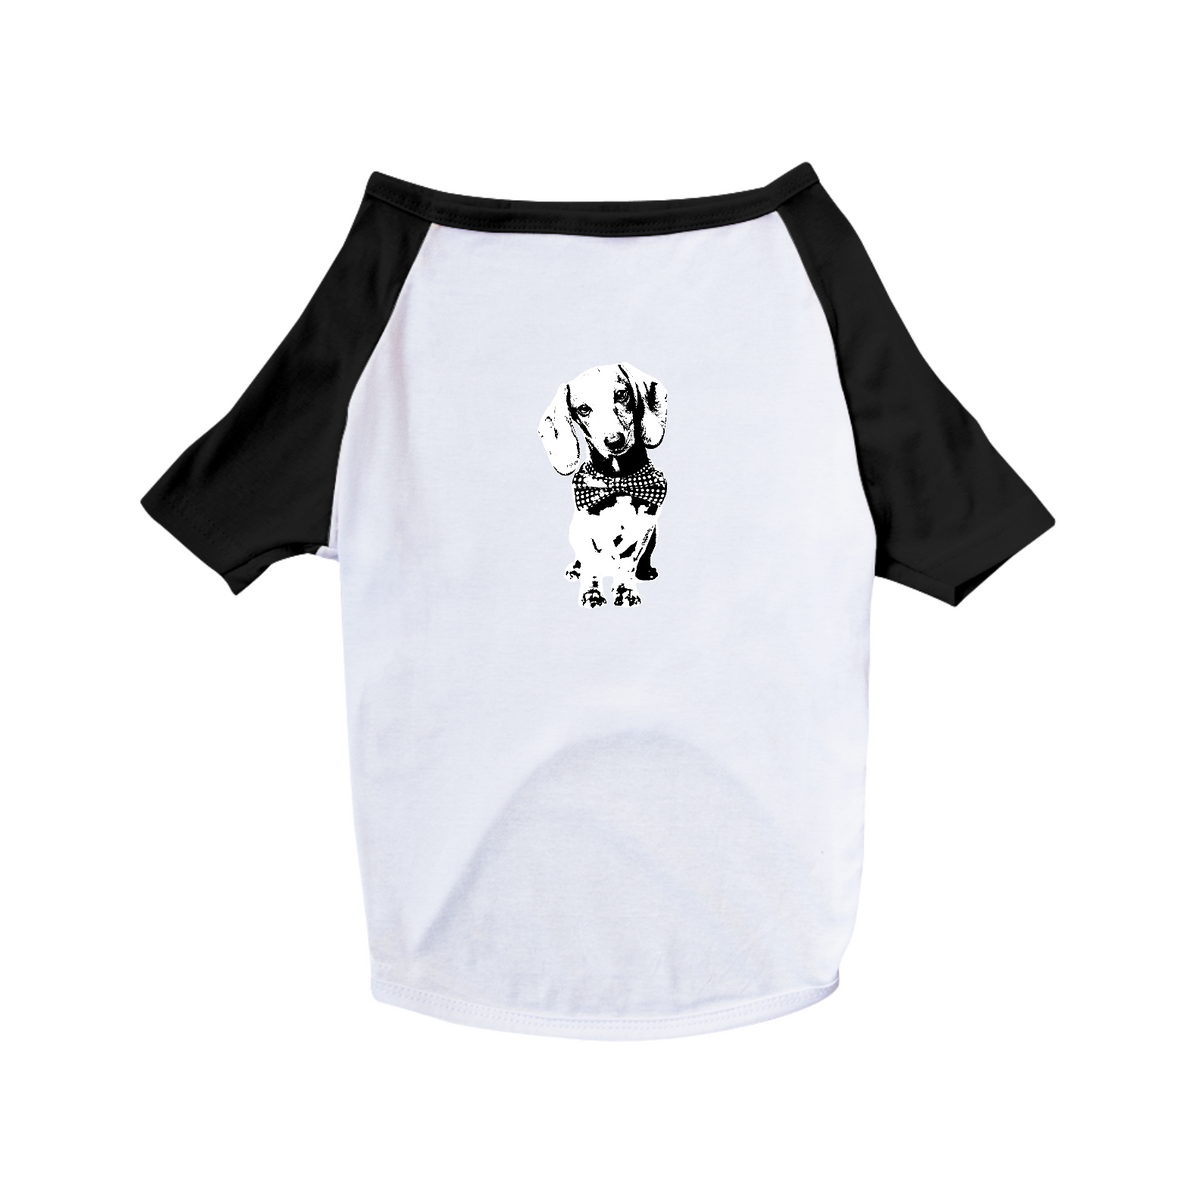 Nome do produto: Camiseta para Cachorro - Dachshund de Gravatinha em Preto e Branco